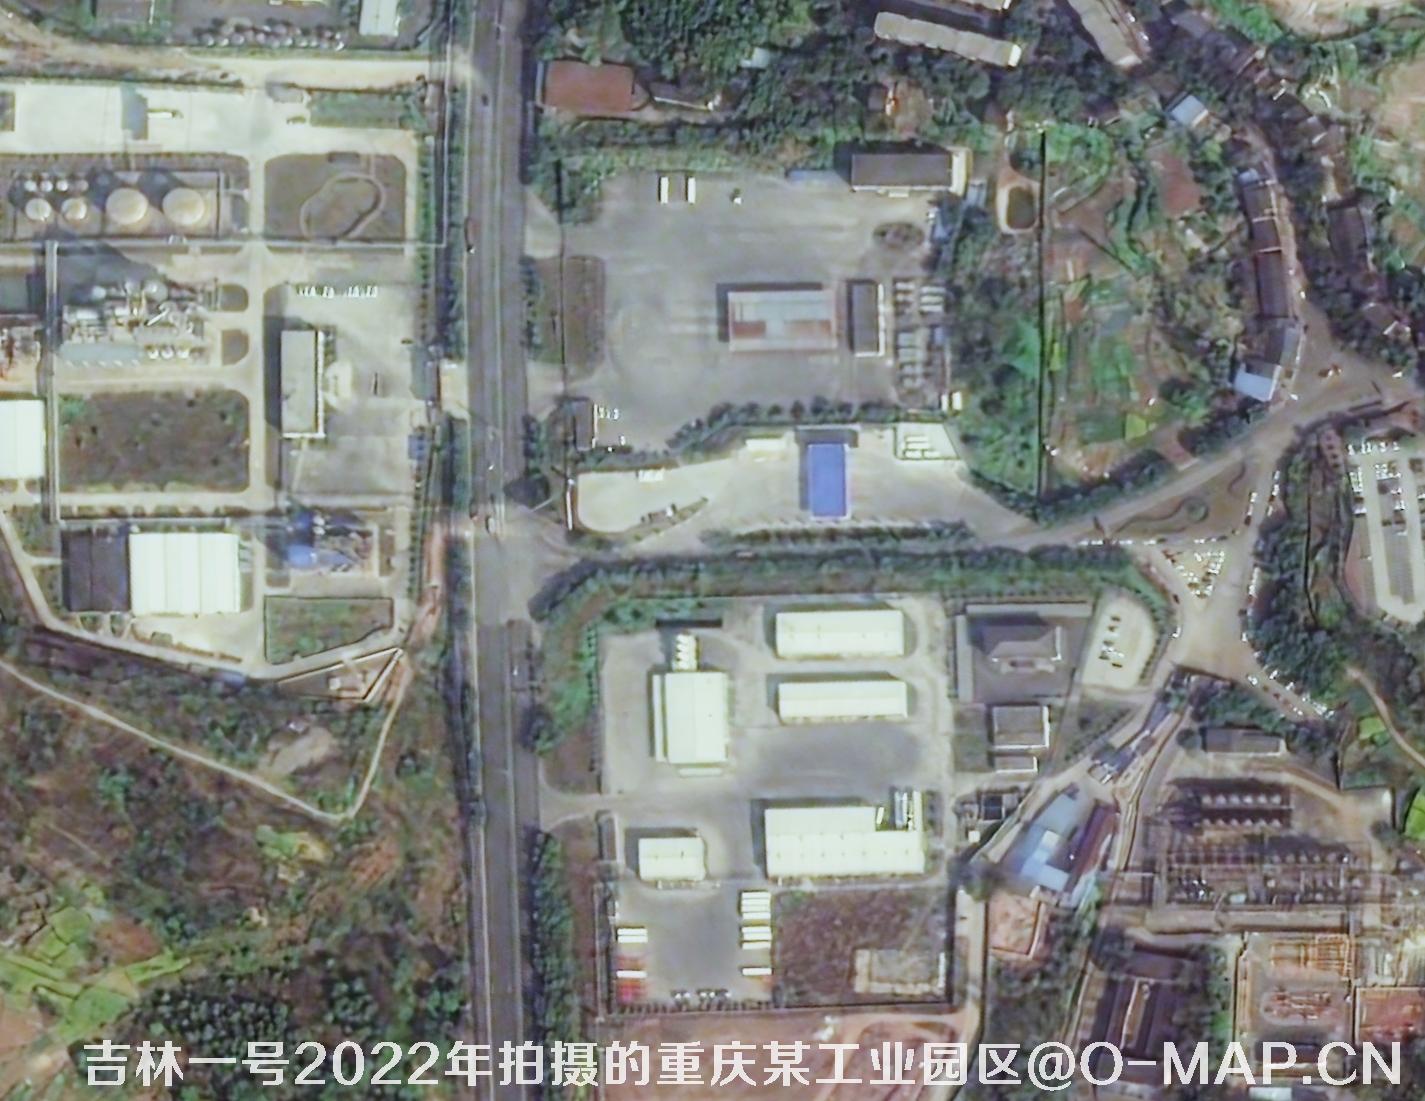 国产0.75米分辨率卫星拍摄的高清图片